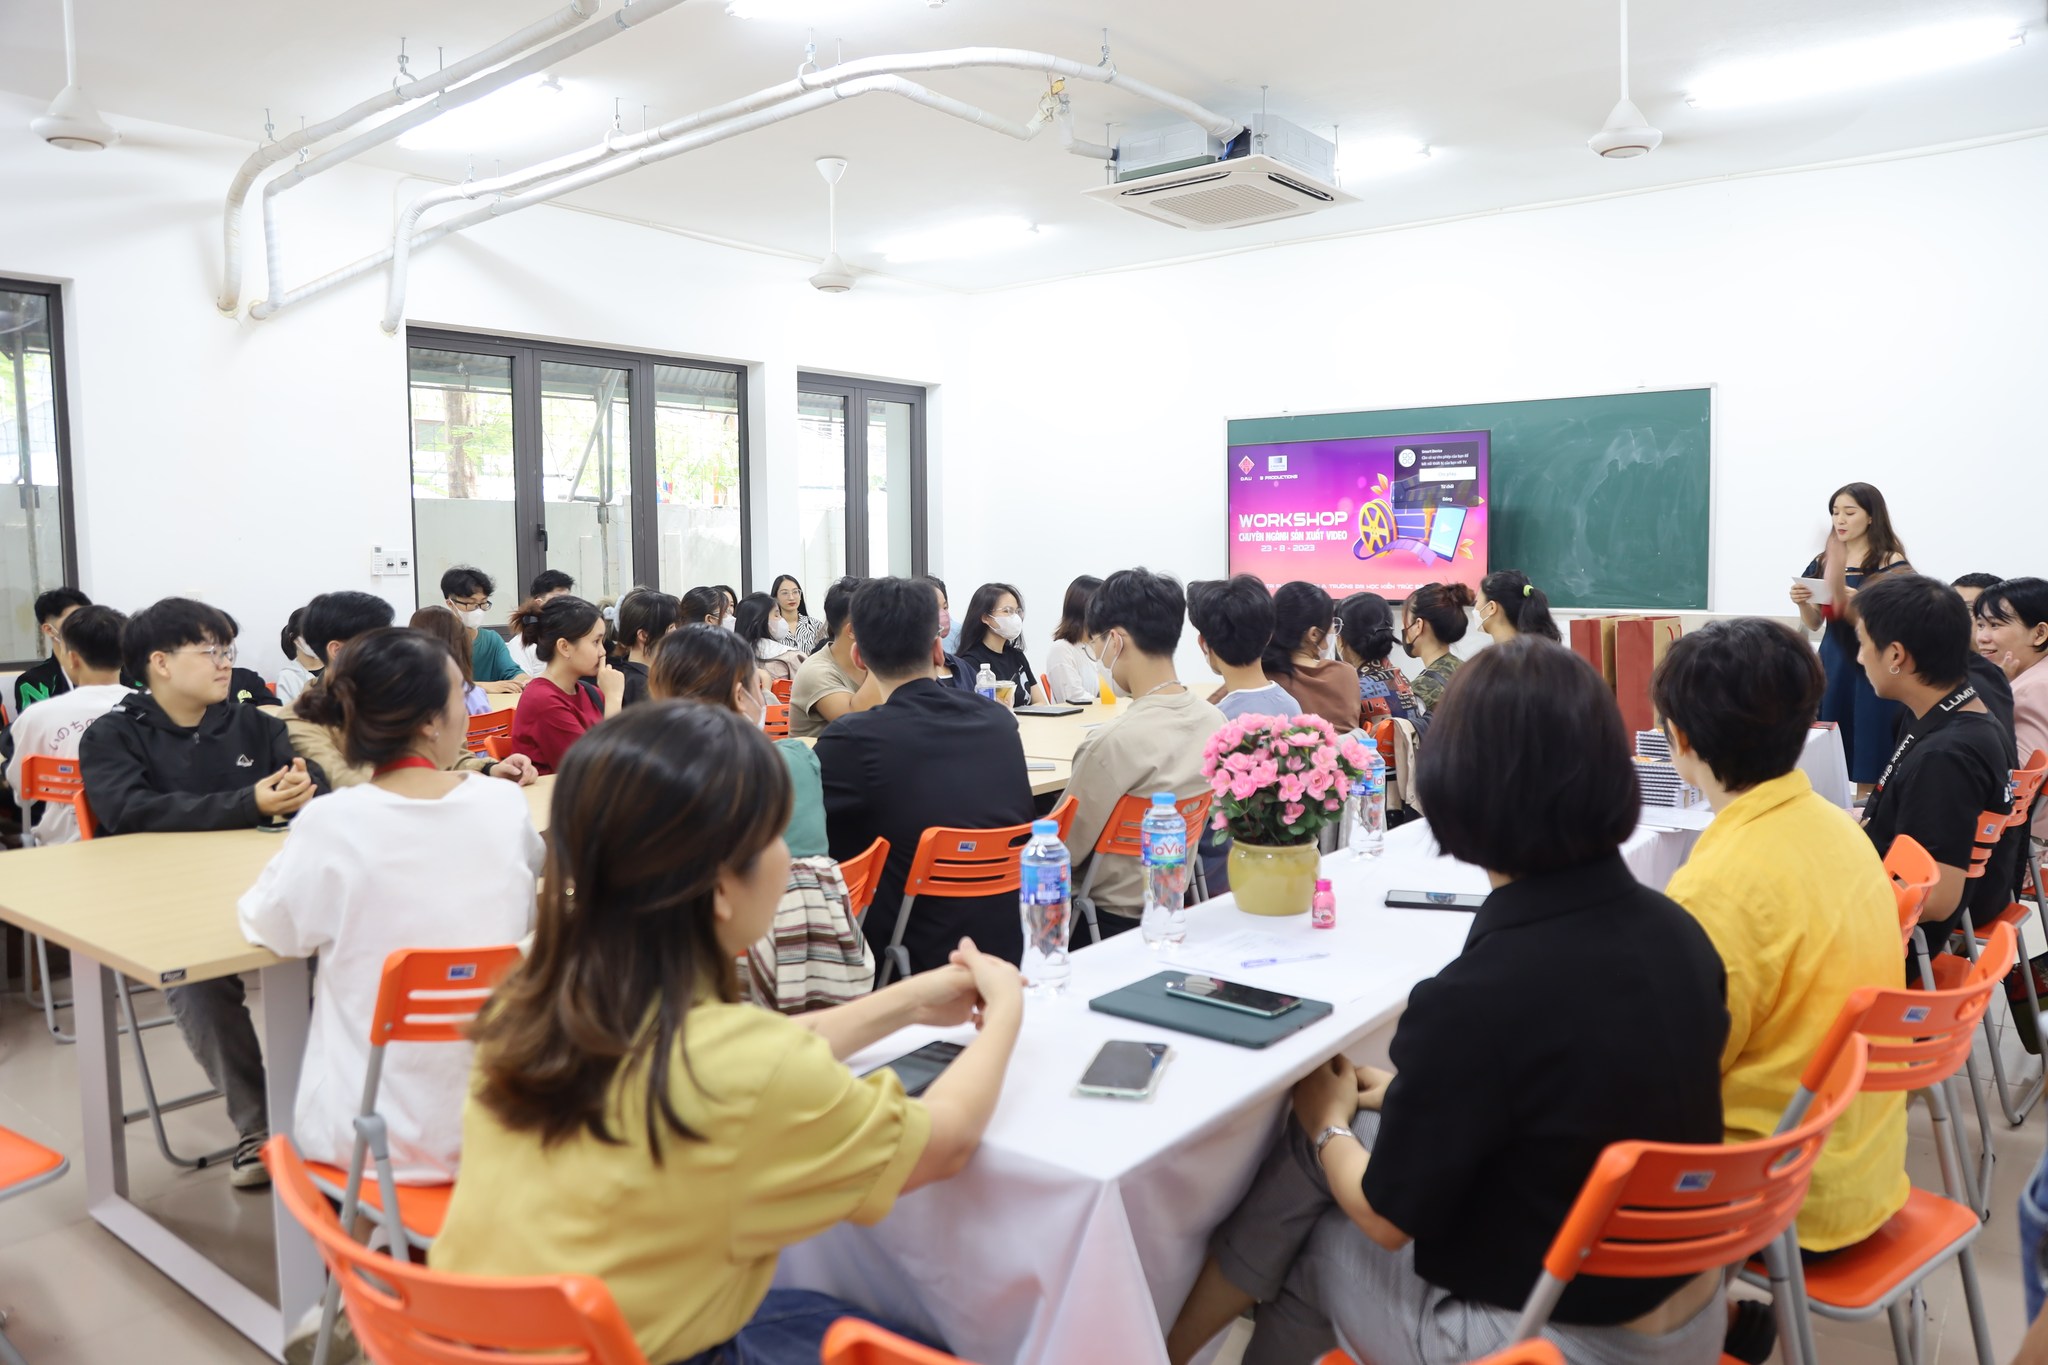 Workshop Chuyên ngành sản xuất video do Ngành Thiết kế đồ họa, Trường Đại học Kiến trúc Đà Nẵng phối hợp với B-Productions đang diễn ra